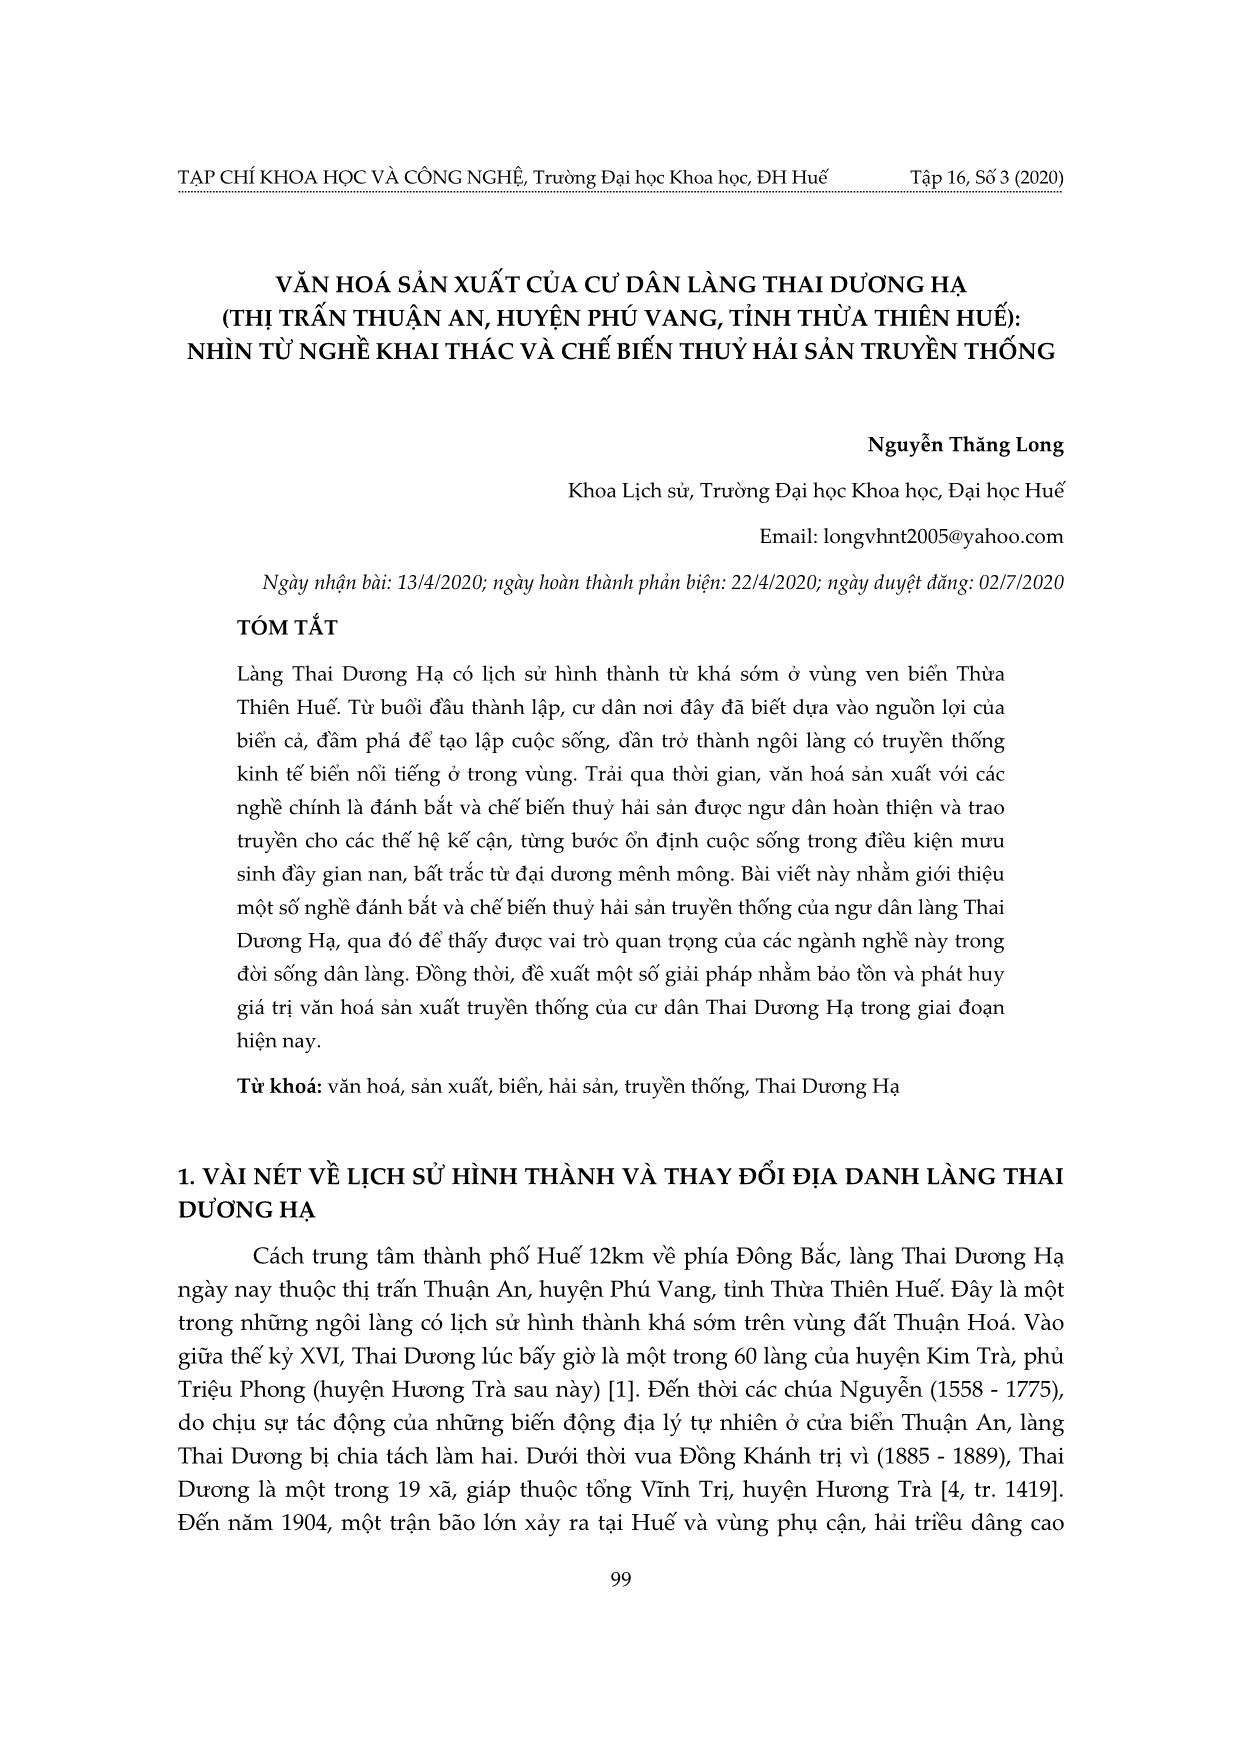 Văn hoá sản xuất của cư dân làng Thai Dương Hạ (thị trấn Thuận an, huyện Phú vang, tỉnh Thừa Thiên Huế): Nhìn từ nghề khai thác và chế biến thuỷ hải sản truyền thống trang 1